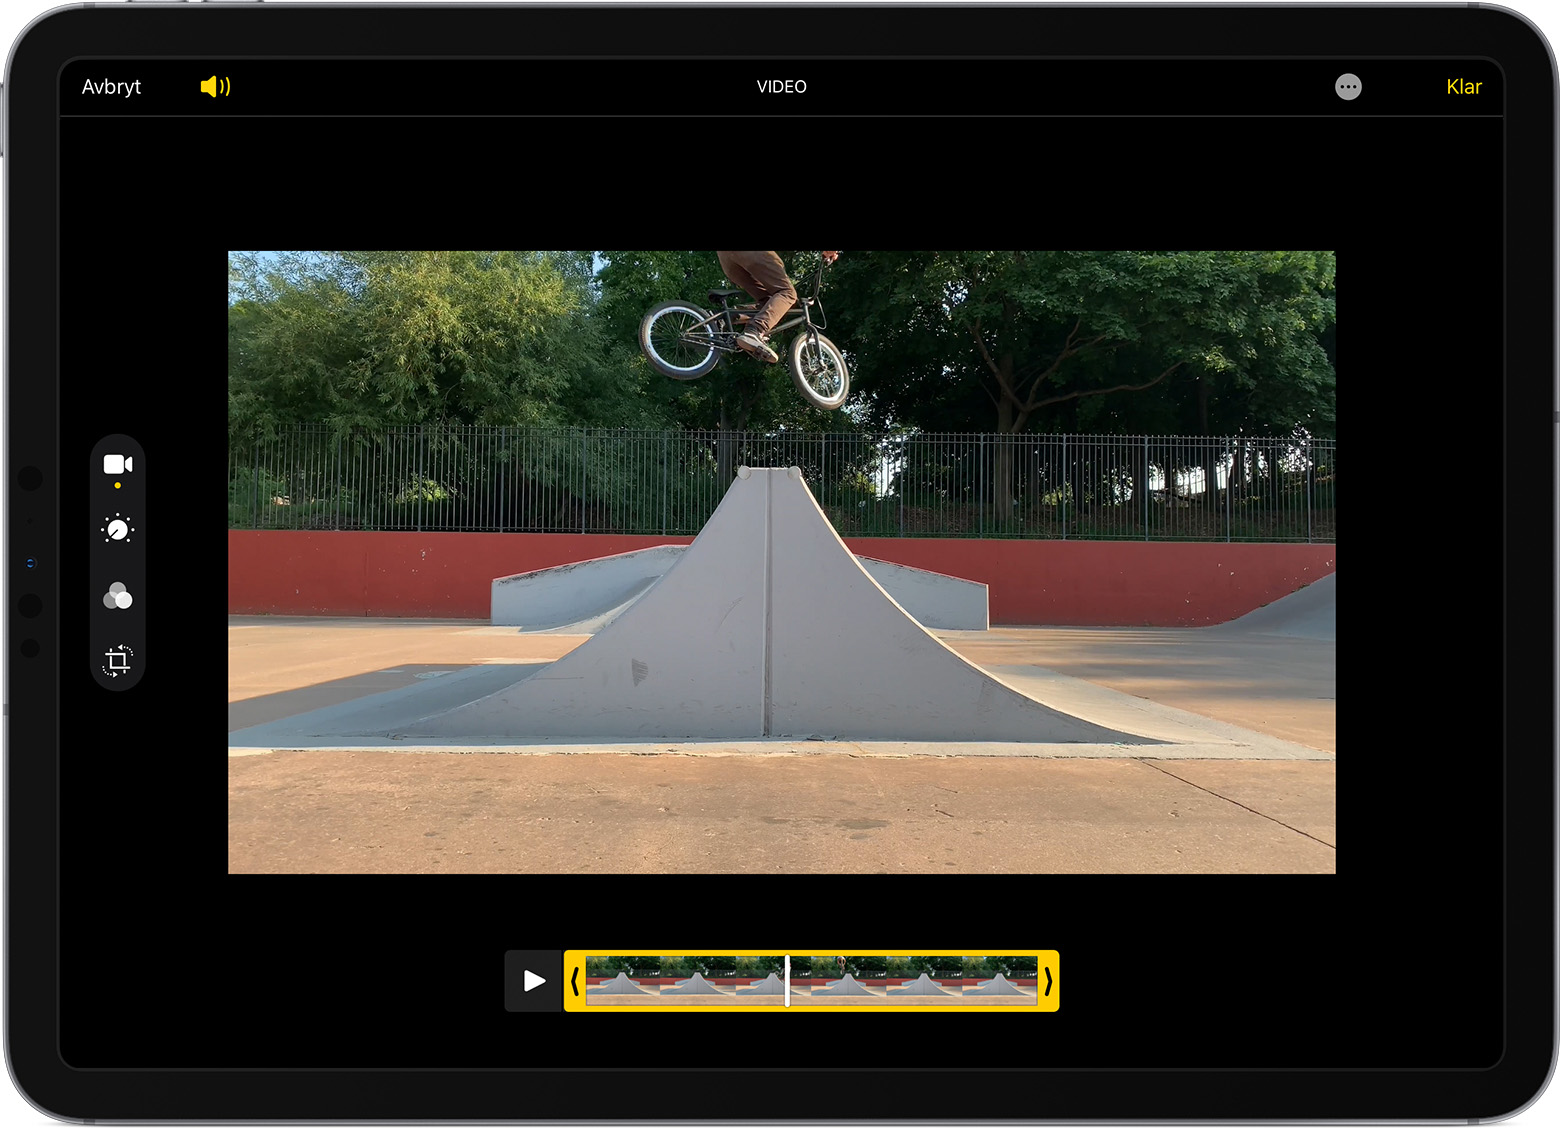 iPad som visar en video i redigeringsläge